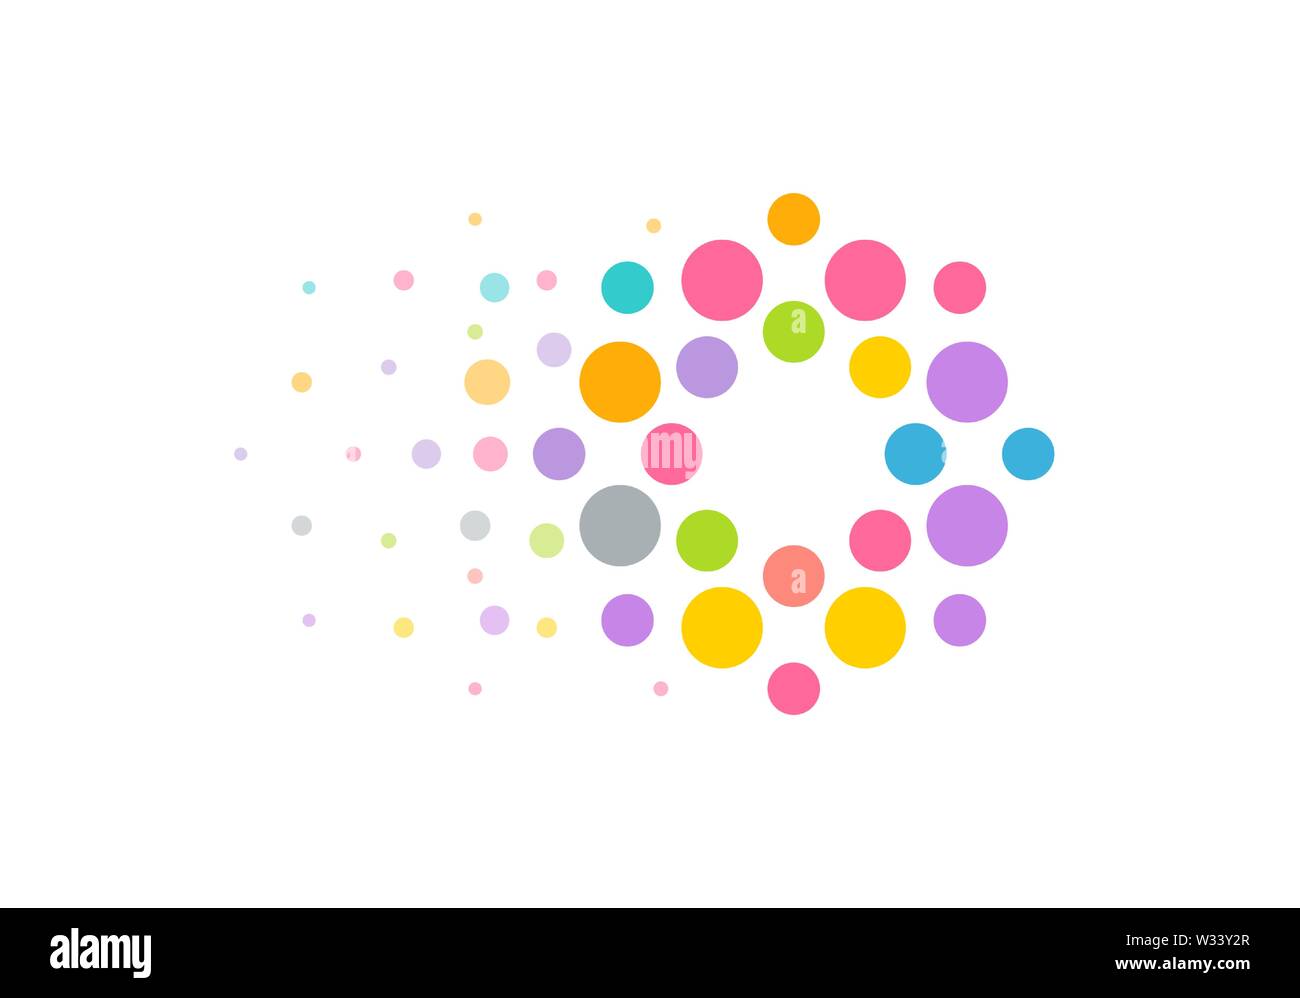 Farbige Kreise Logo Konzept mit Vorwärtsbewegung Effekt. Helle moderne perfekte Logo von seo oder Website-Entwicklung Identität oder Vermietung Katze Unternehmen Stock Vektor